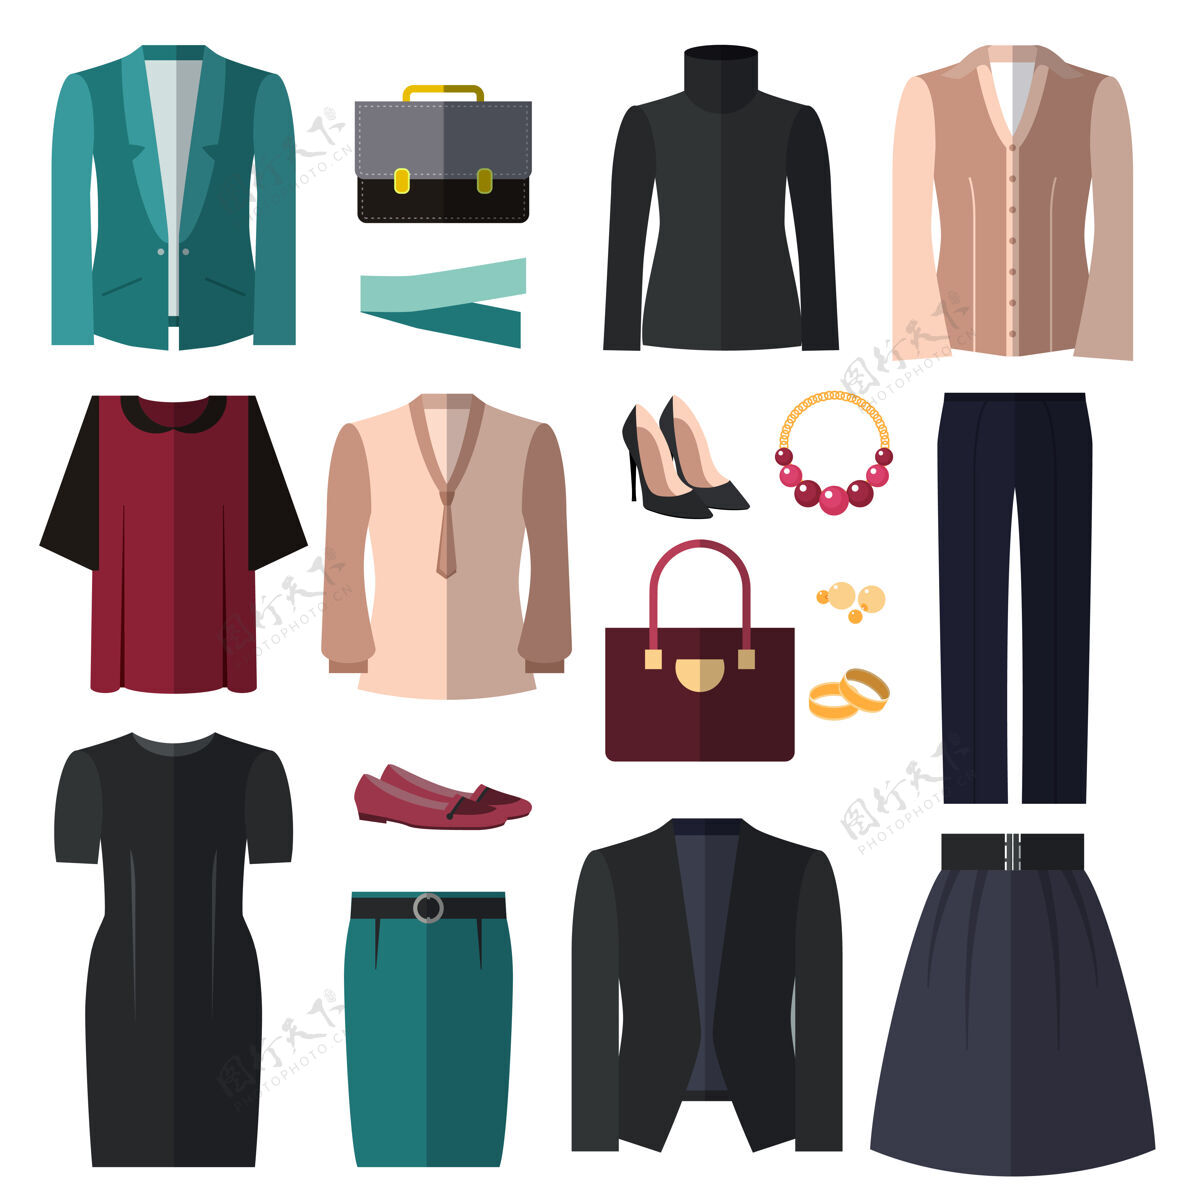 平商务女士服装及配饰套装优雅时尚的商务风格服装时尚优雅现代